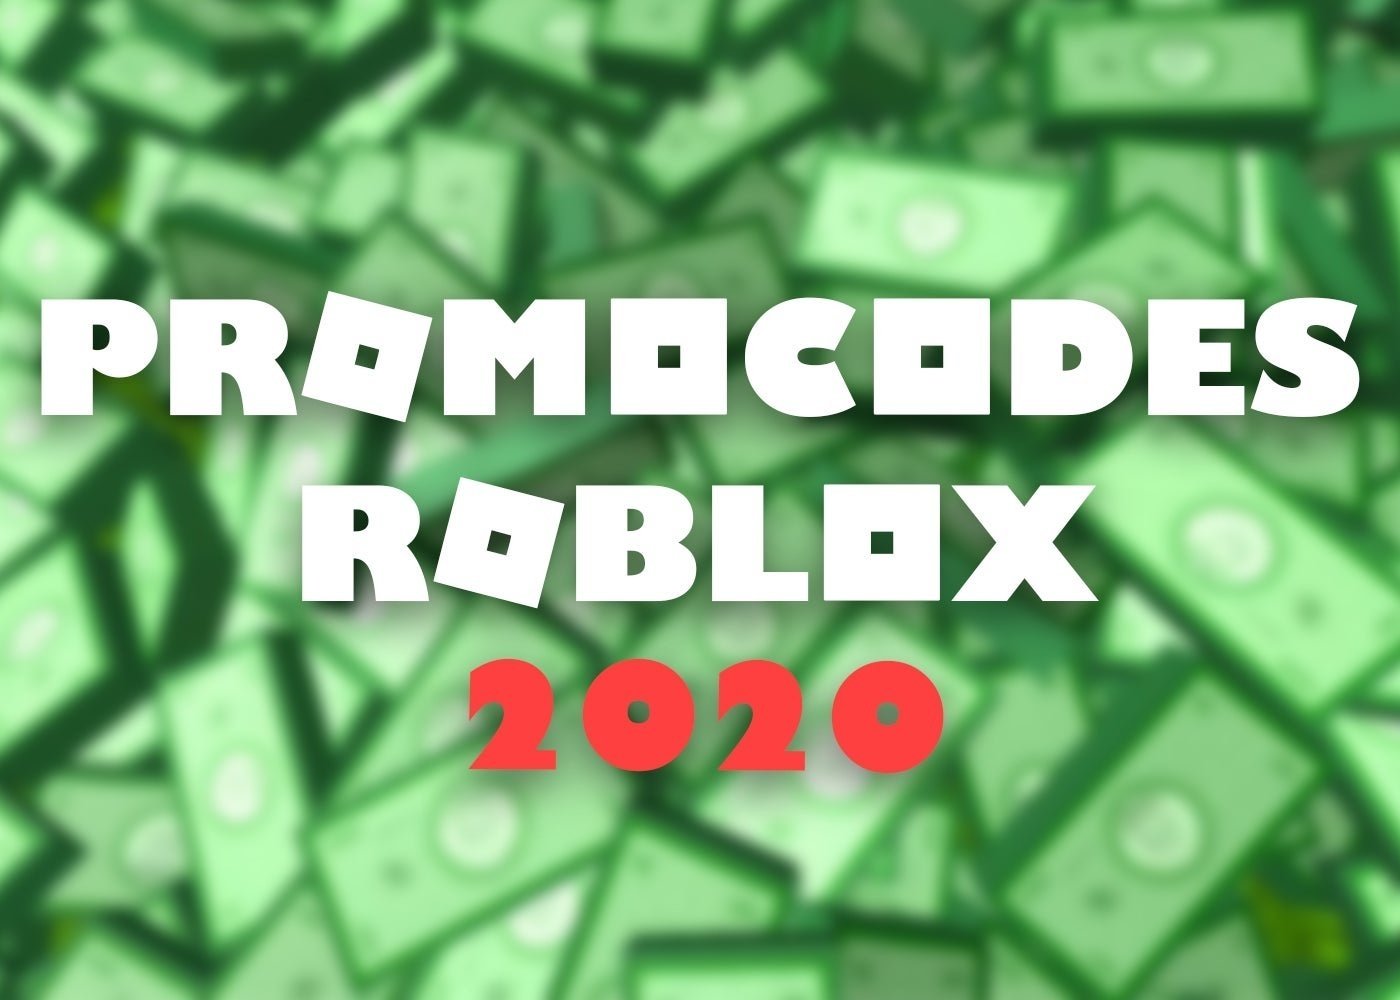 Promocodes De Roblox En Octubre 2020 Lista De Codigos Completa - nuevo promocode de roblox 2020 octubre